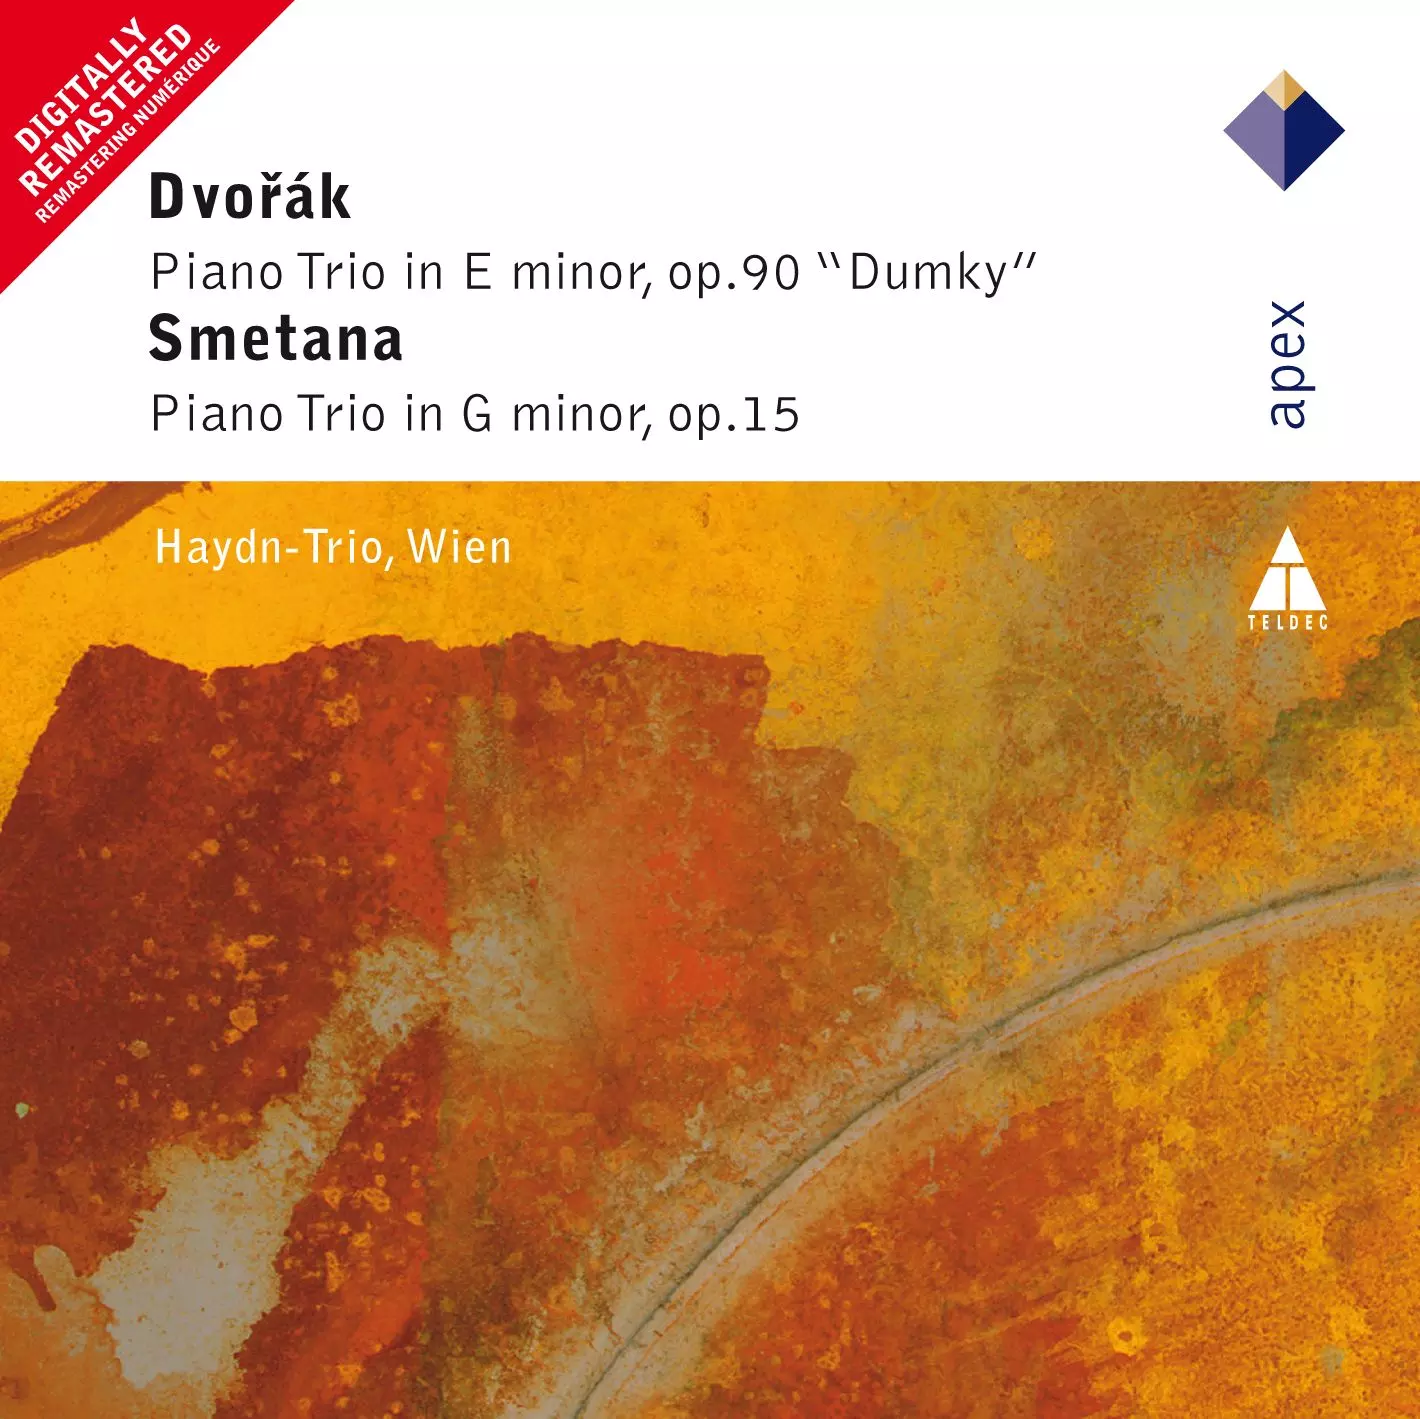 Dvorák & Smetana: Piano Trios